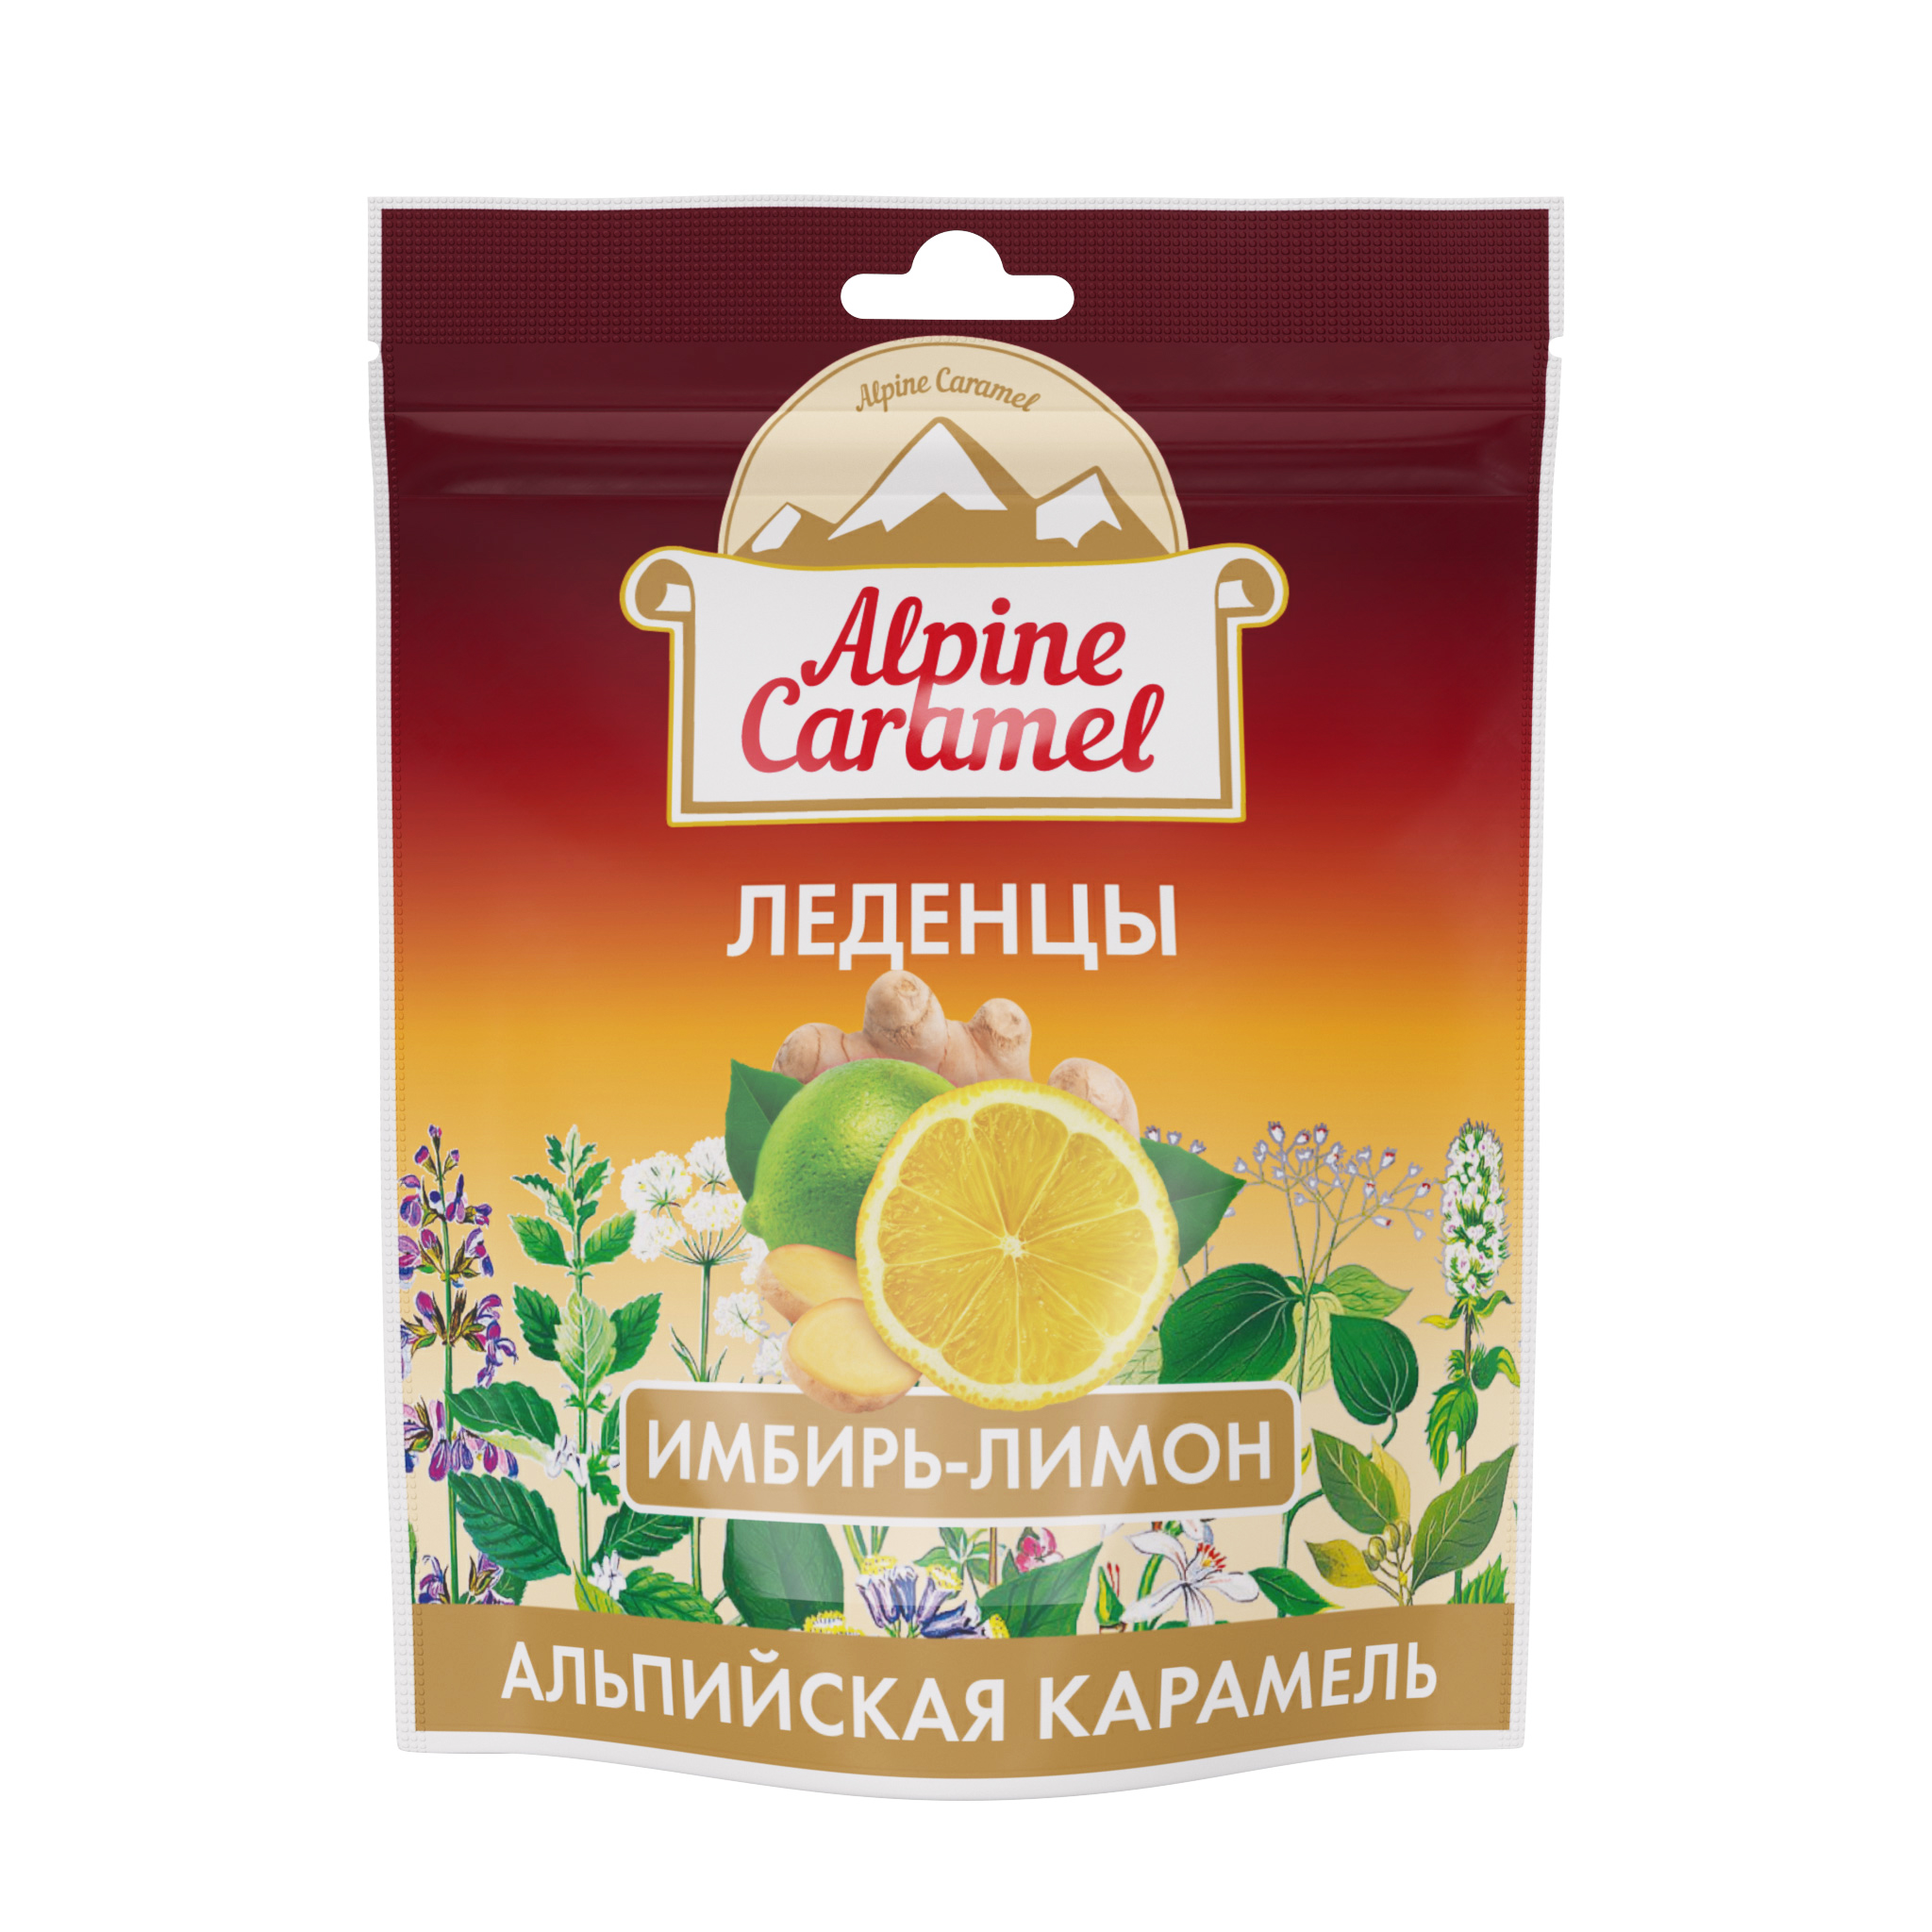 Alpine Caramel, леденцы со вкусом имбирь-лимон, 75 г альпийская карамель леденцы 75 г имбирь лимон